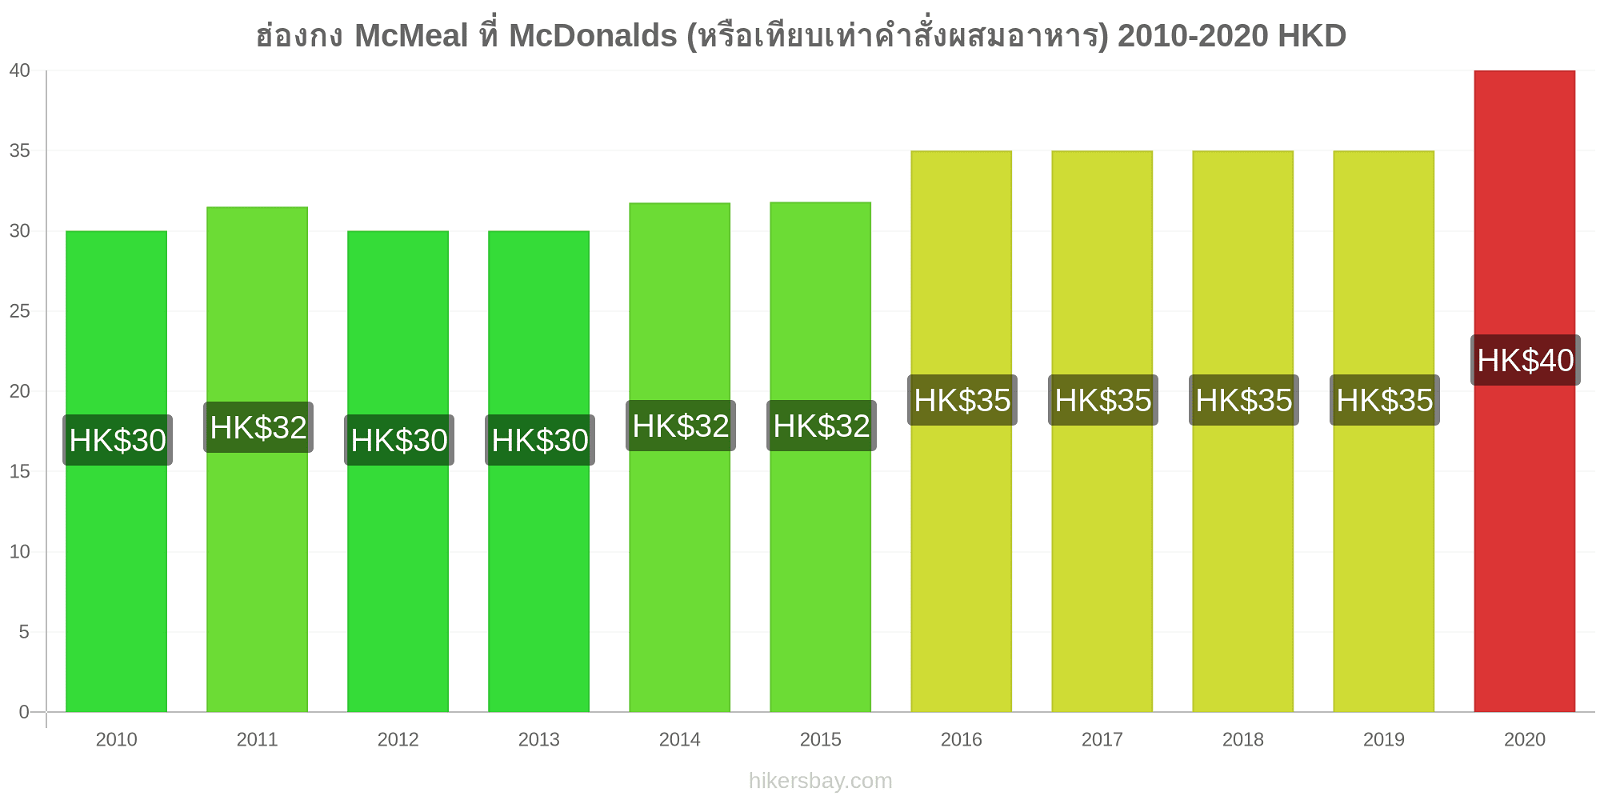 ฮ่องกง การเปลี่ยนแปลงราคา McMeal ที่ McDonalds (หรือเทียบเท่าคำสั่งผสมอาหาร) hikersbay.com